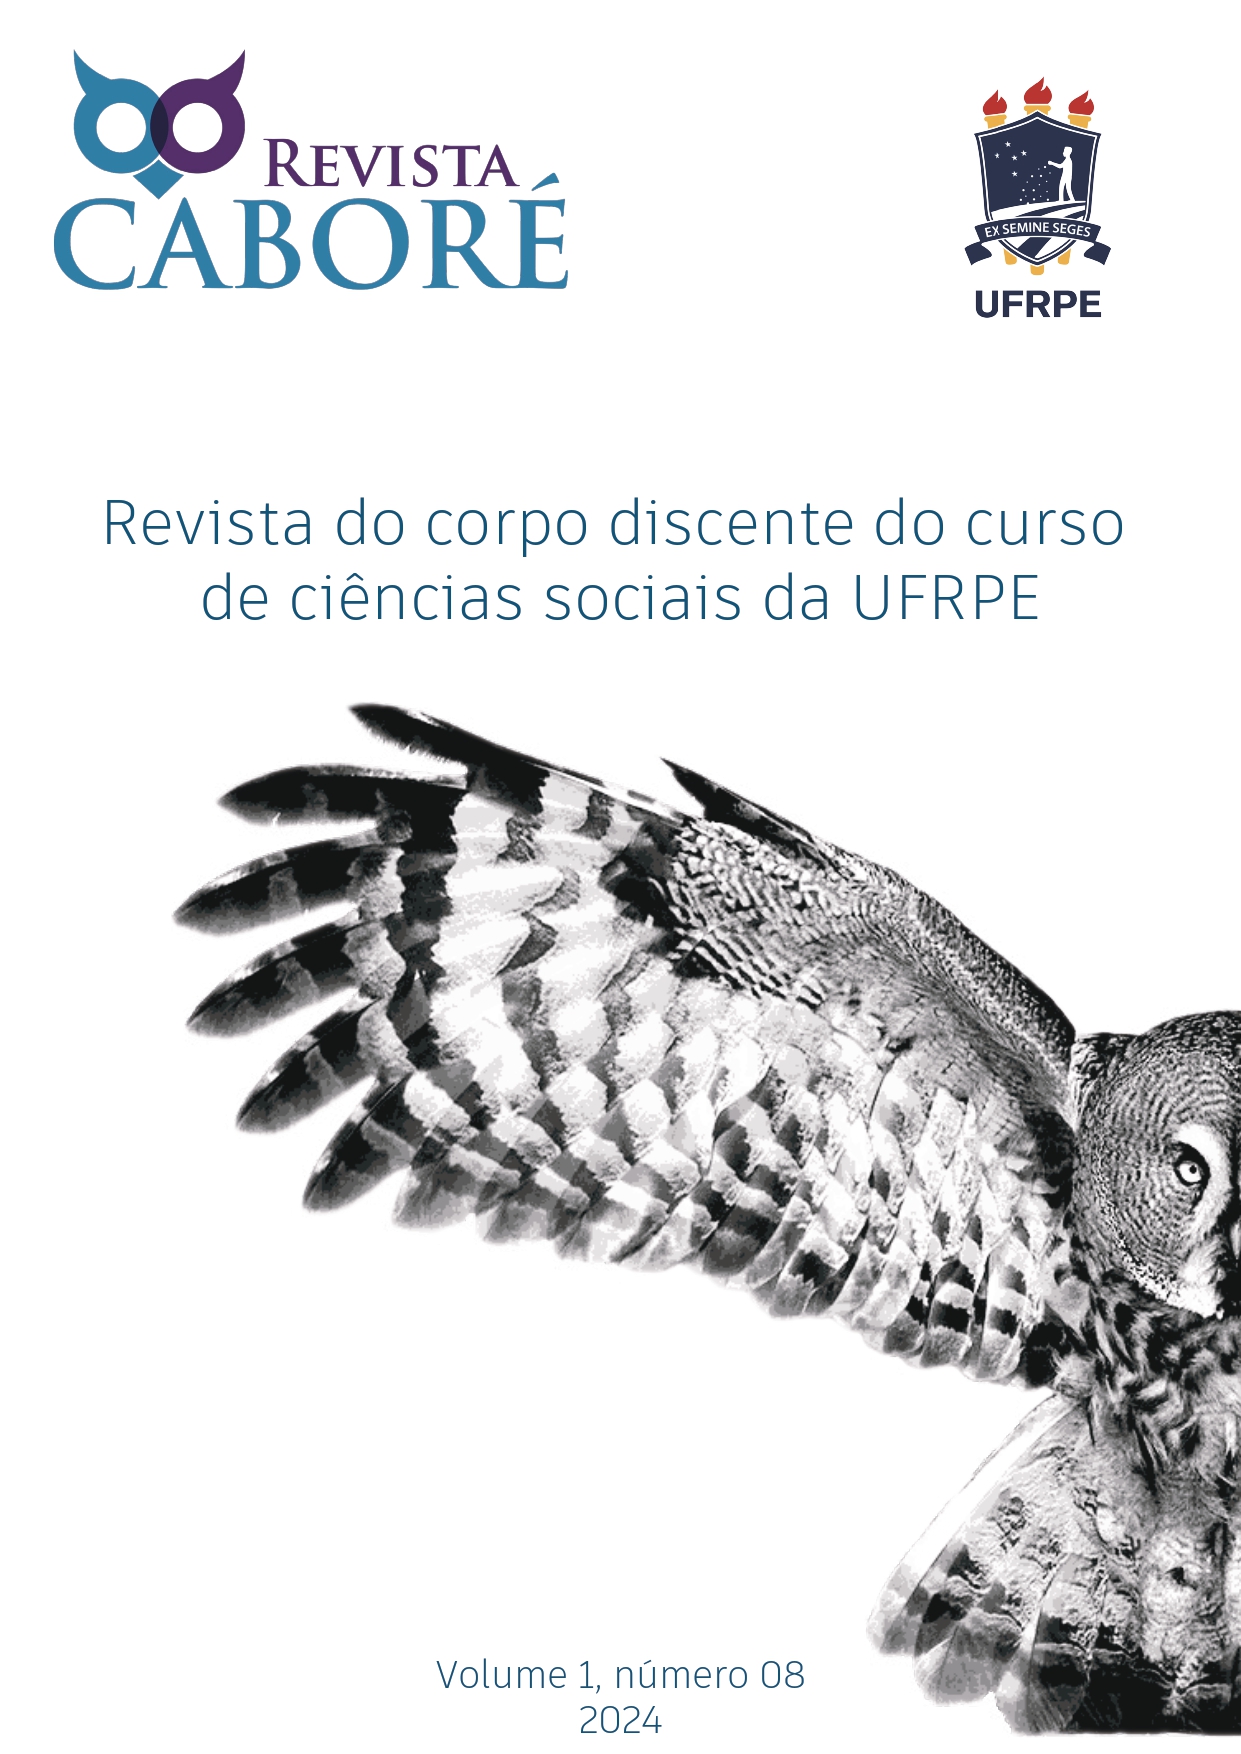 					Visualizar v. 1 n. 8 (2024): Revista Caboré
				